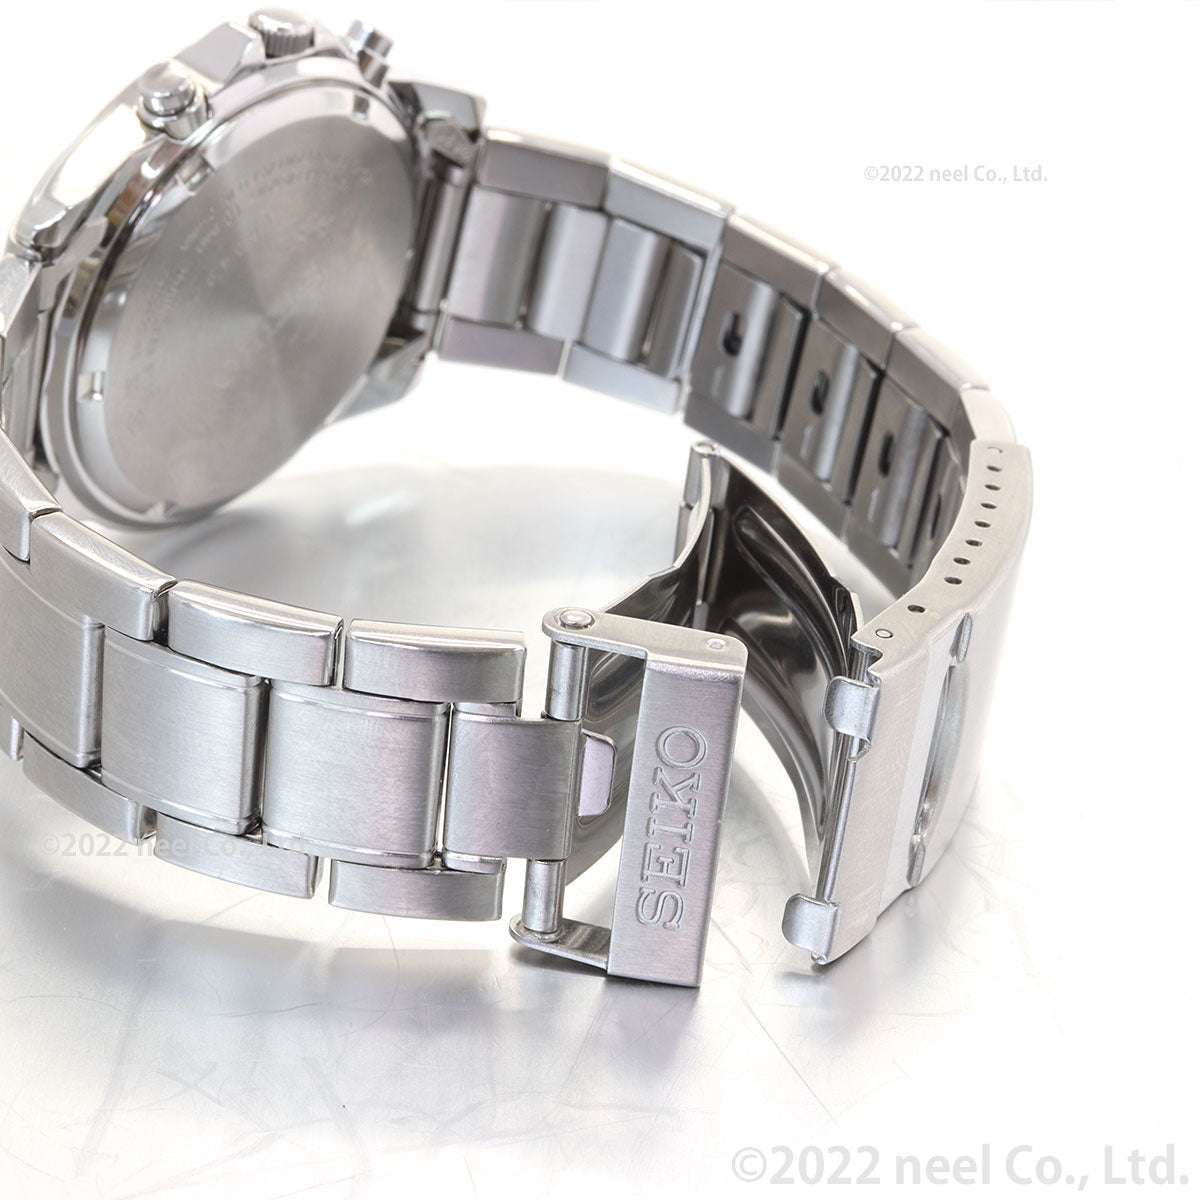 セイコー 逆輸入 クロノグラフ 海外SEIKO 腕時計 メンズ SND309